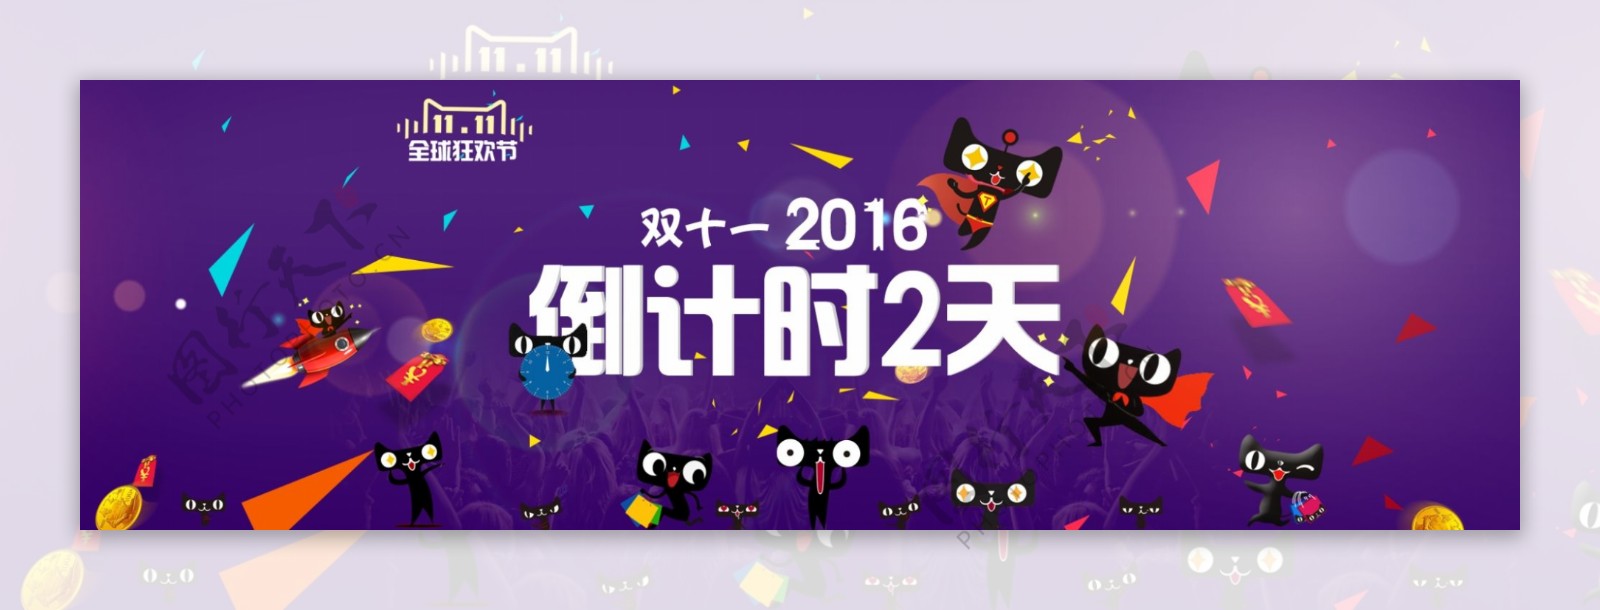 淘宝天猫双十一促销活动紫色海报设计